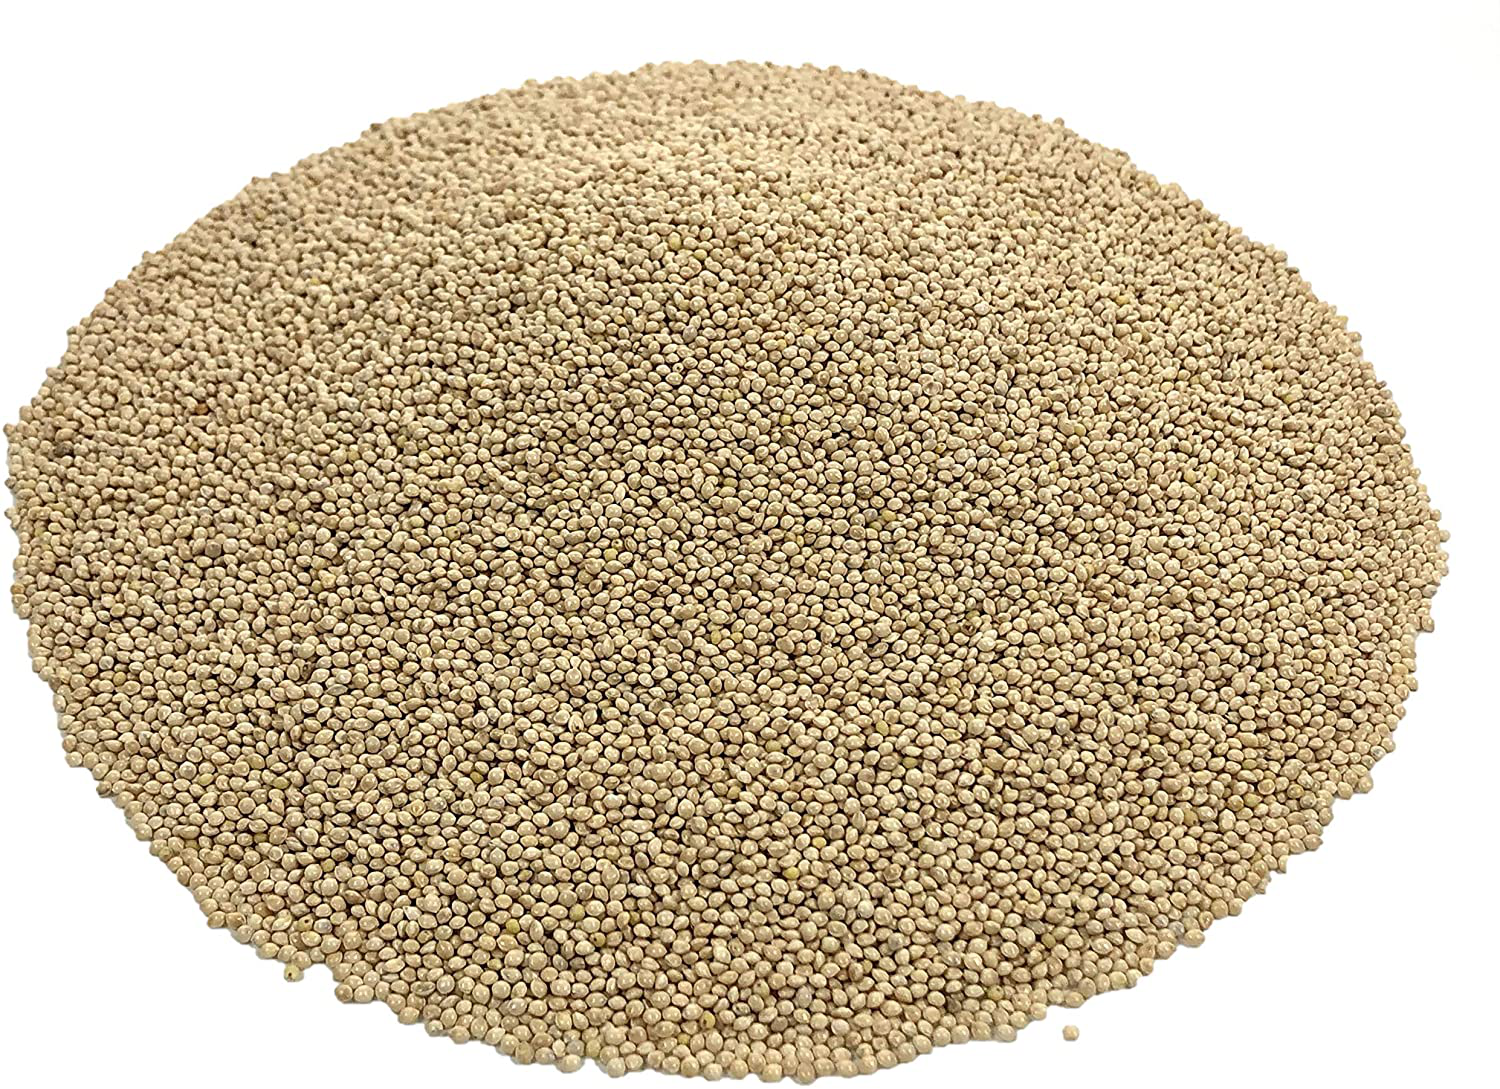 Premium White Proso Millet Bird Seed Feed,10Lbs Bulk Bag